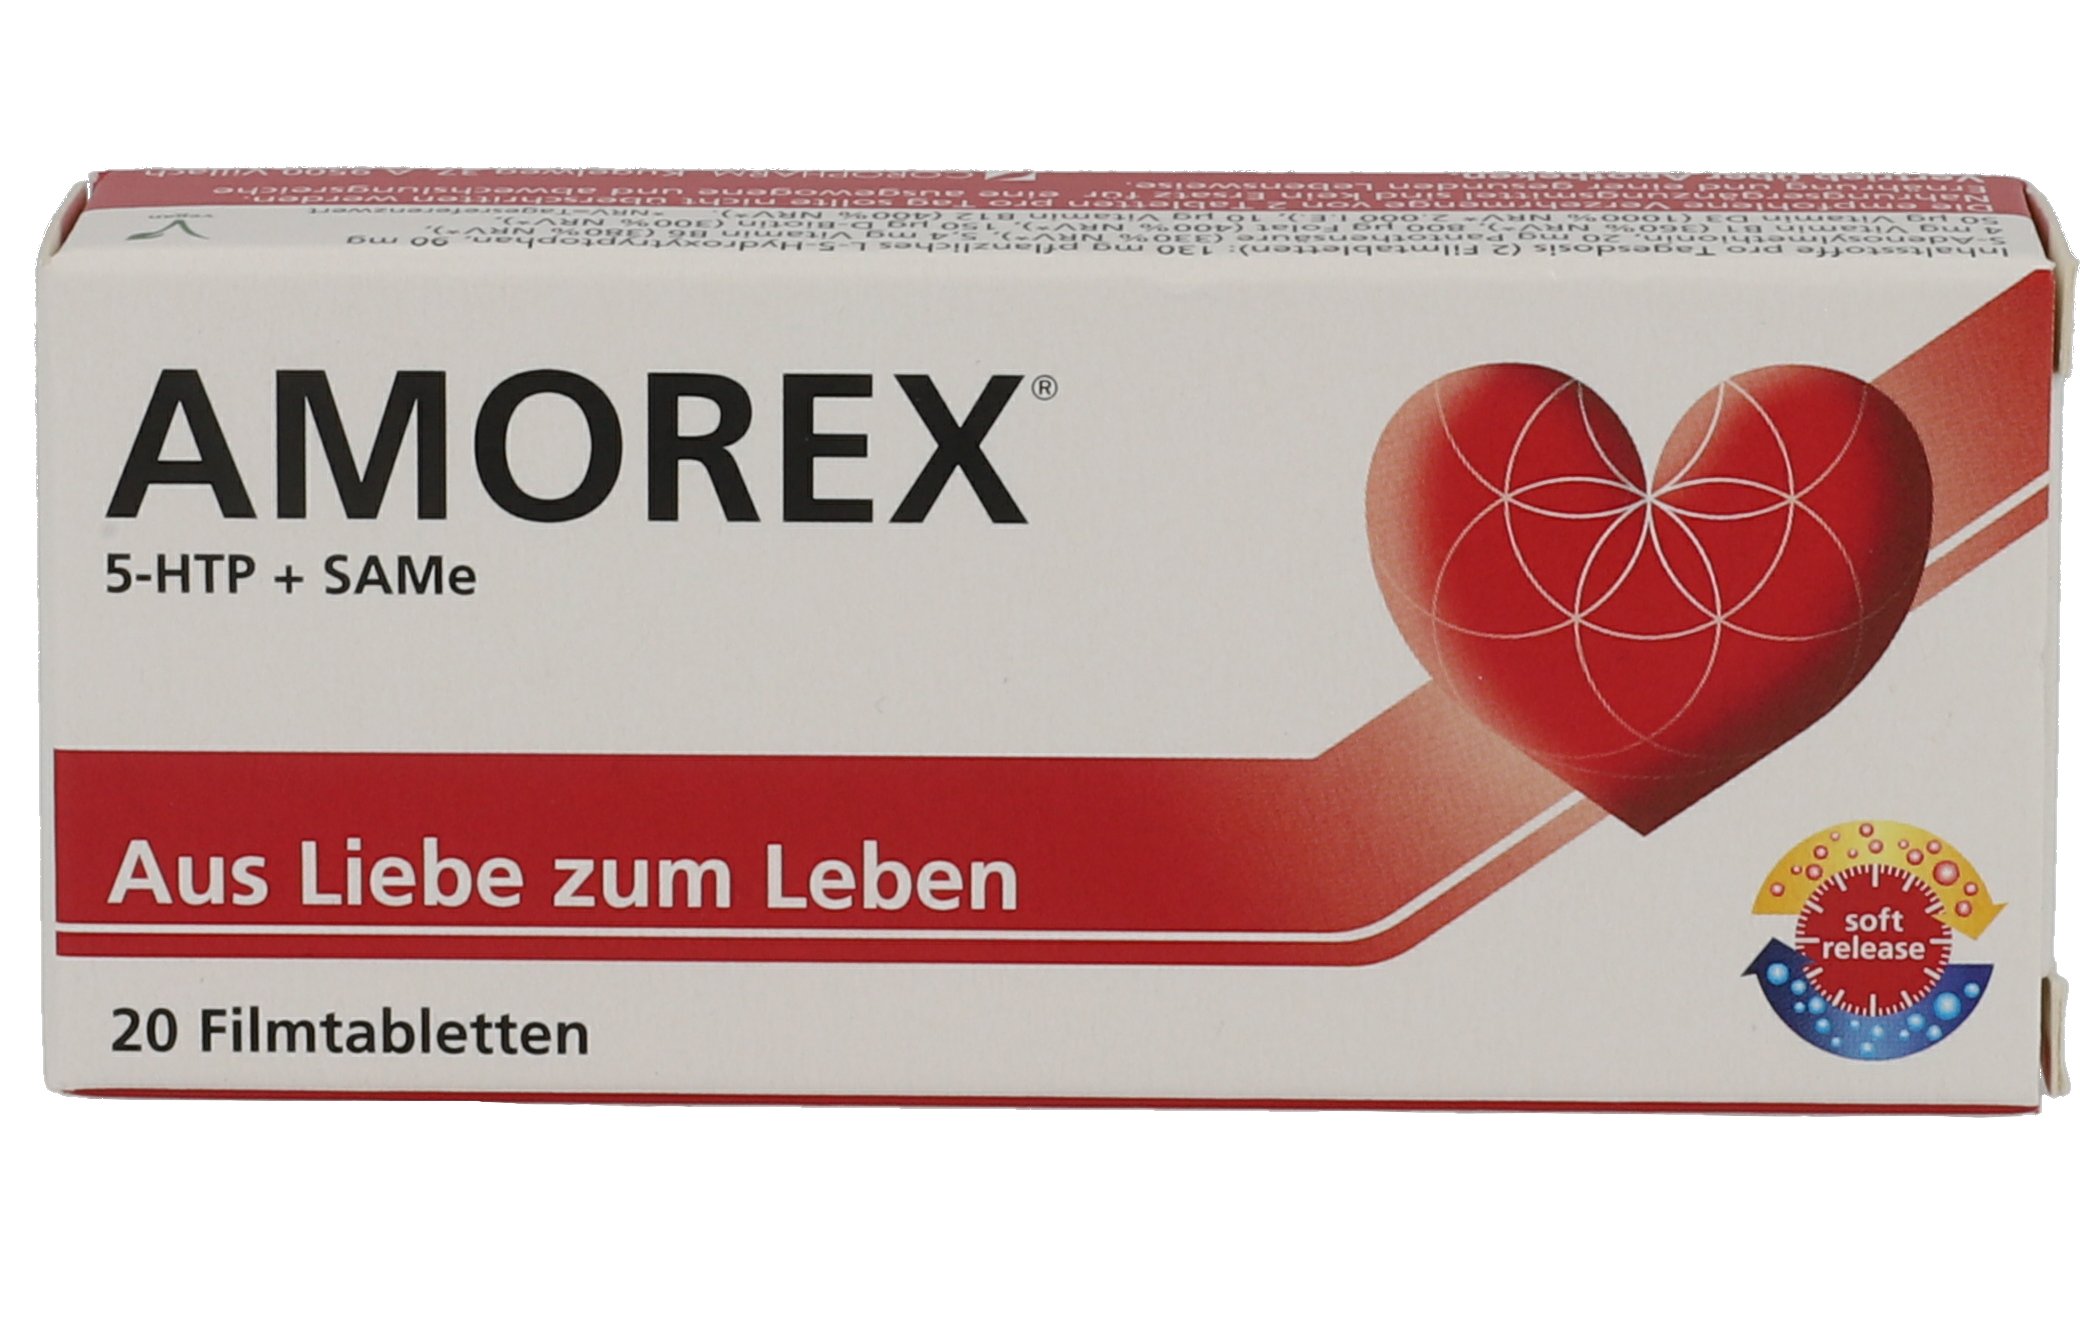 AMOREX bei Liebesummer und Trennung Tabletten